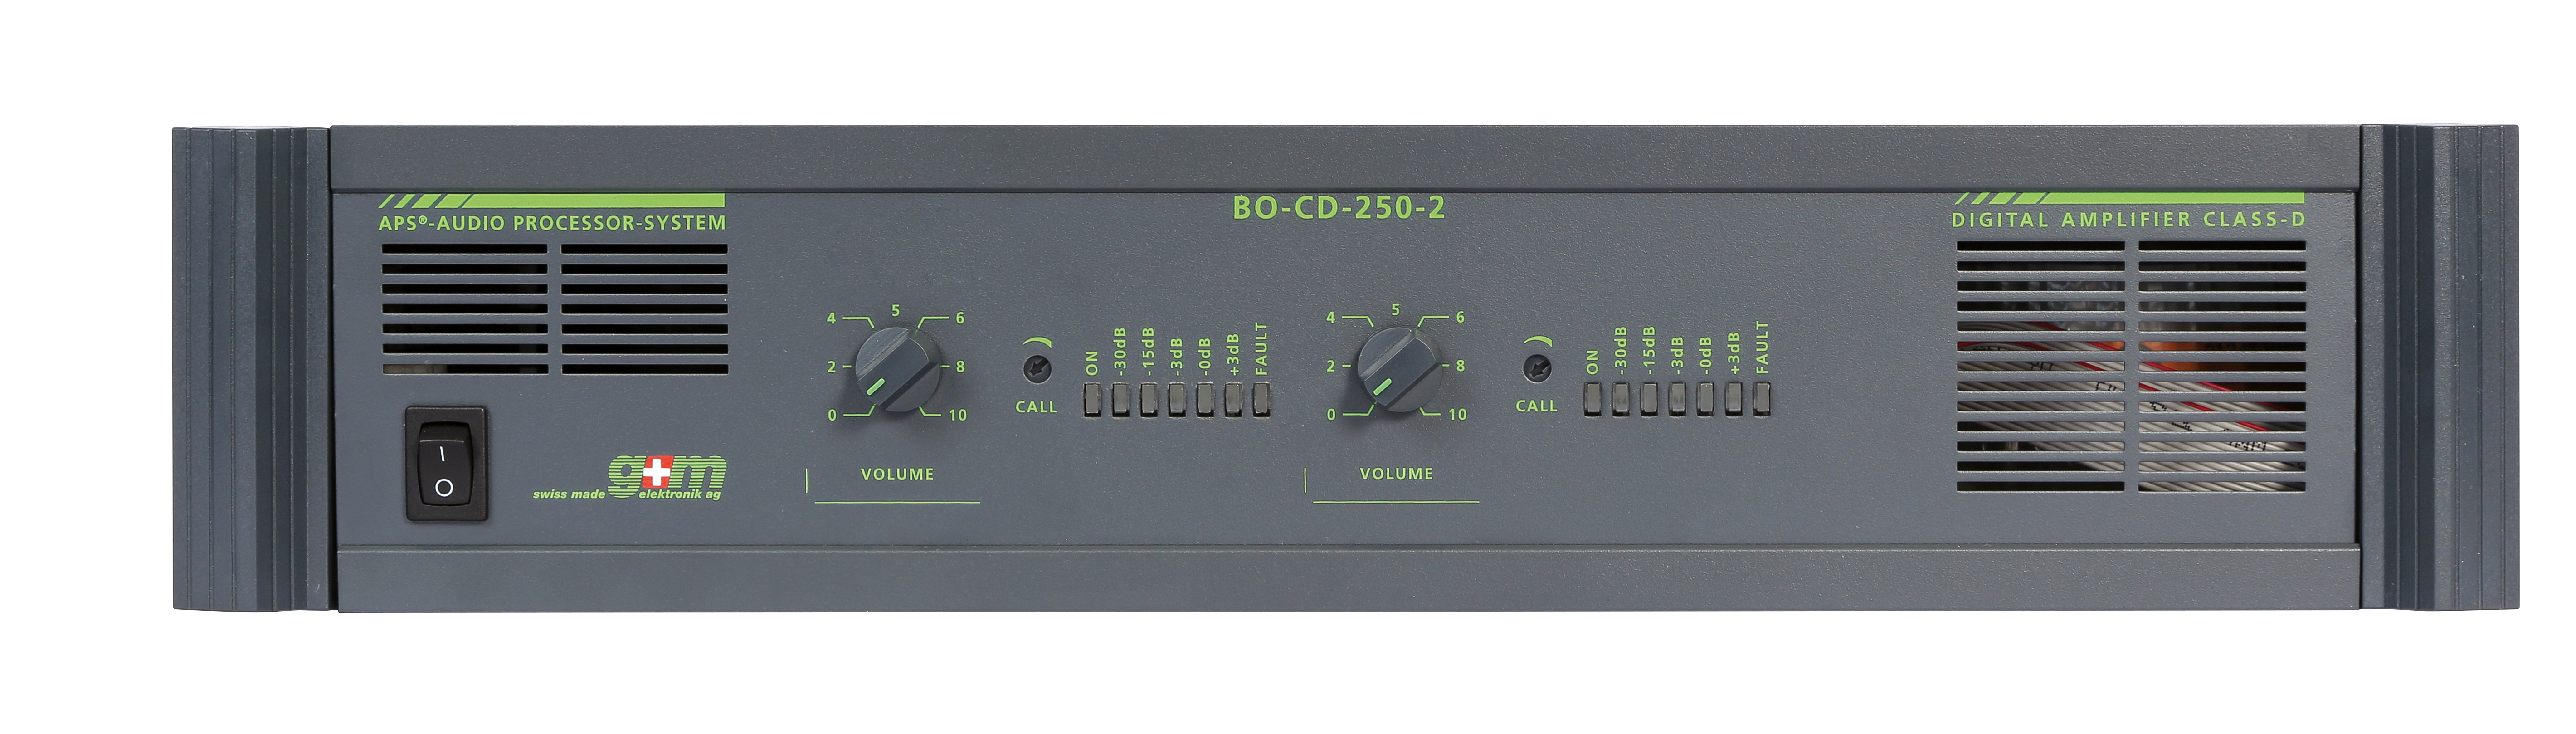 Усилитель Digital System c-1000. Усилитель bo-CD-250-2. Sharp 1-bit Digital Amplifier.